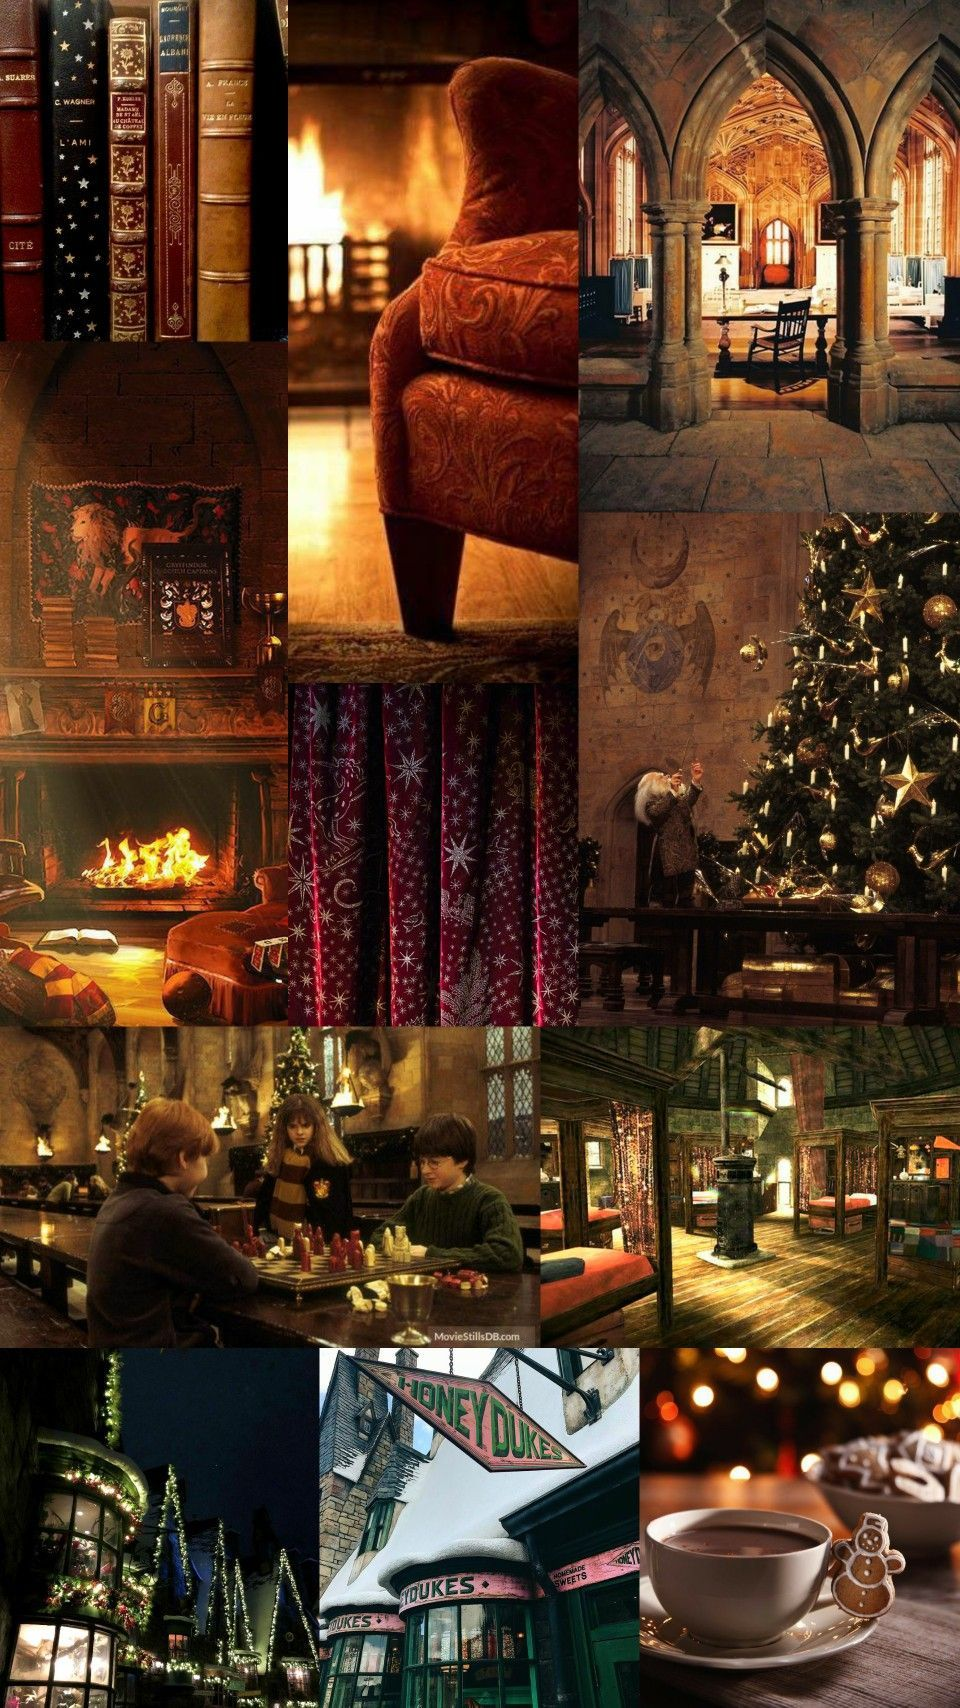 Mùa giáng sinh đang đến! Hãy tổ chức bữa tiệc giáng sinh đầy phép thuật cùng với những hình nền Harry Potter lấy cảm hứng từ bộ phim cùng tên, và cảm nhận không khí lễ hội. Bạn có thể ngắm nhìn ba người bạn thân của chúng ta đang tận hưởng một bữa tiệc giáng sinh ấm áp như thế nào hoặc tận hưởng khung cảnh giáng sinh của phòng ăn Hogwarts.